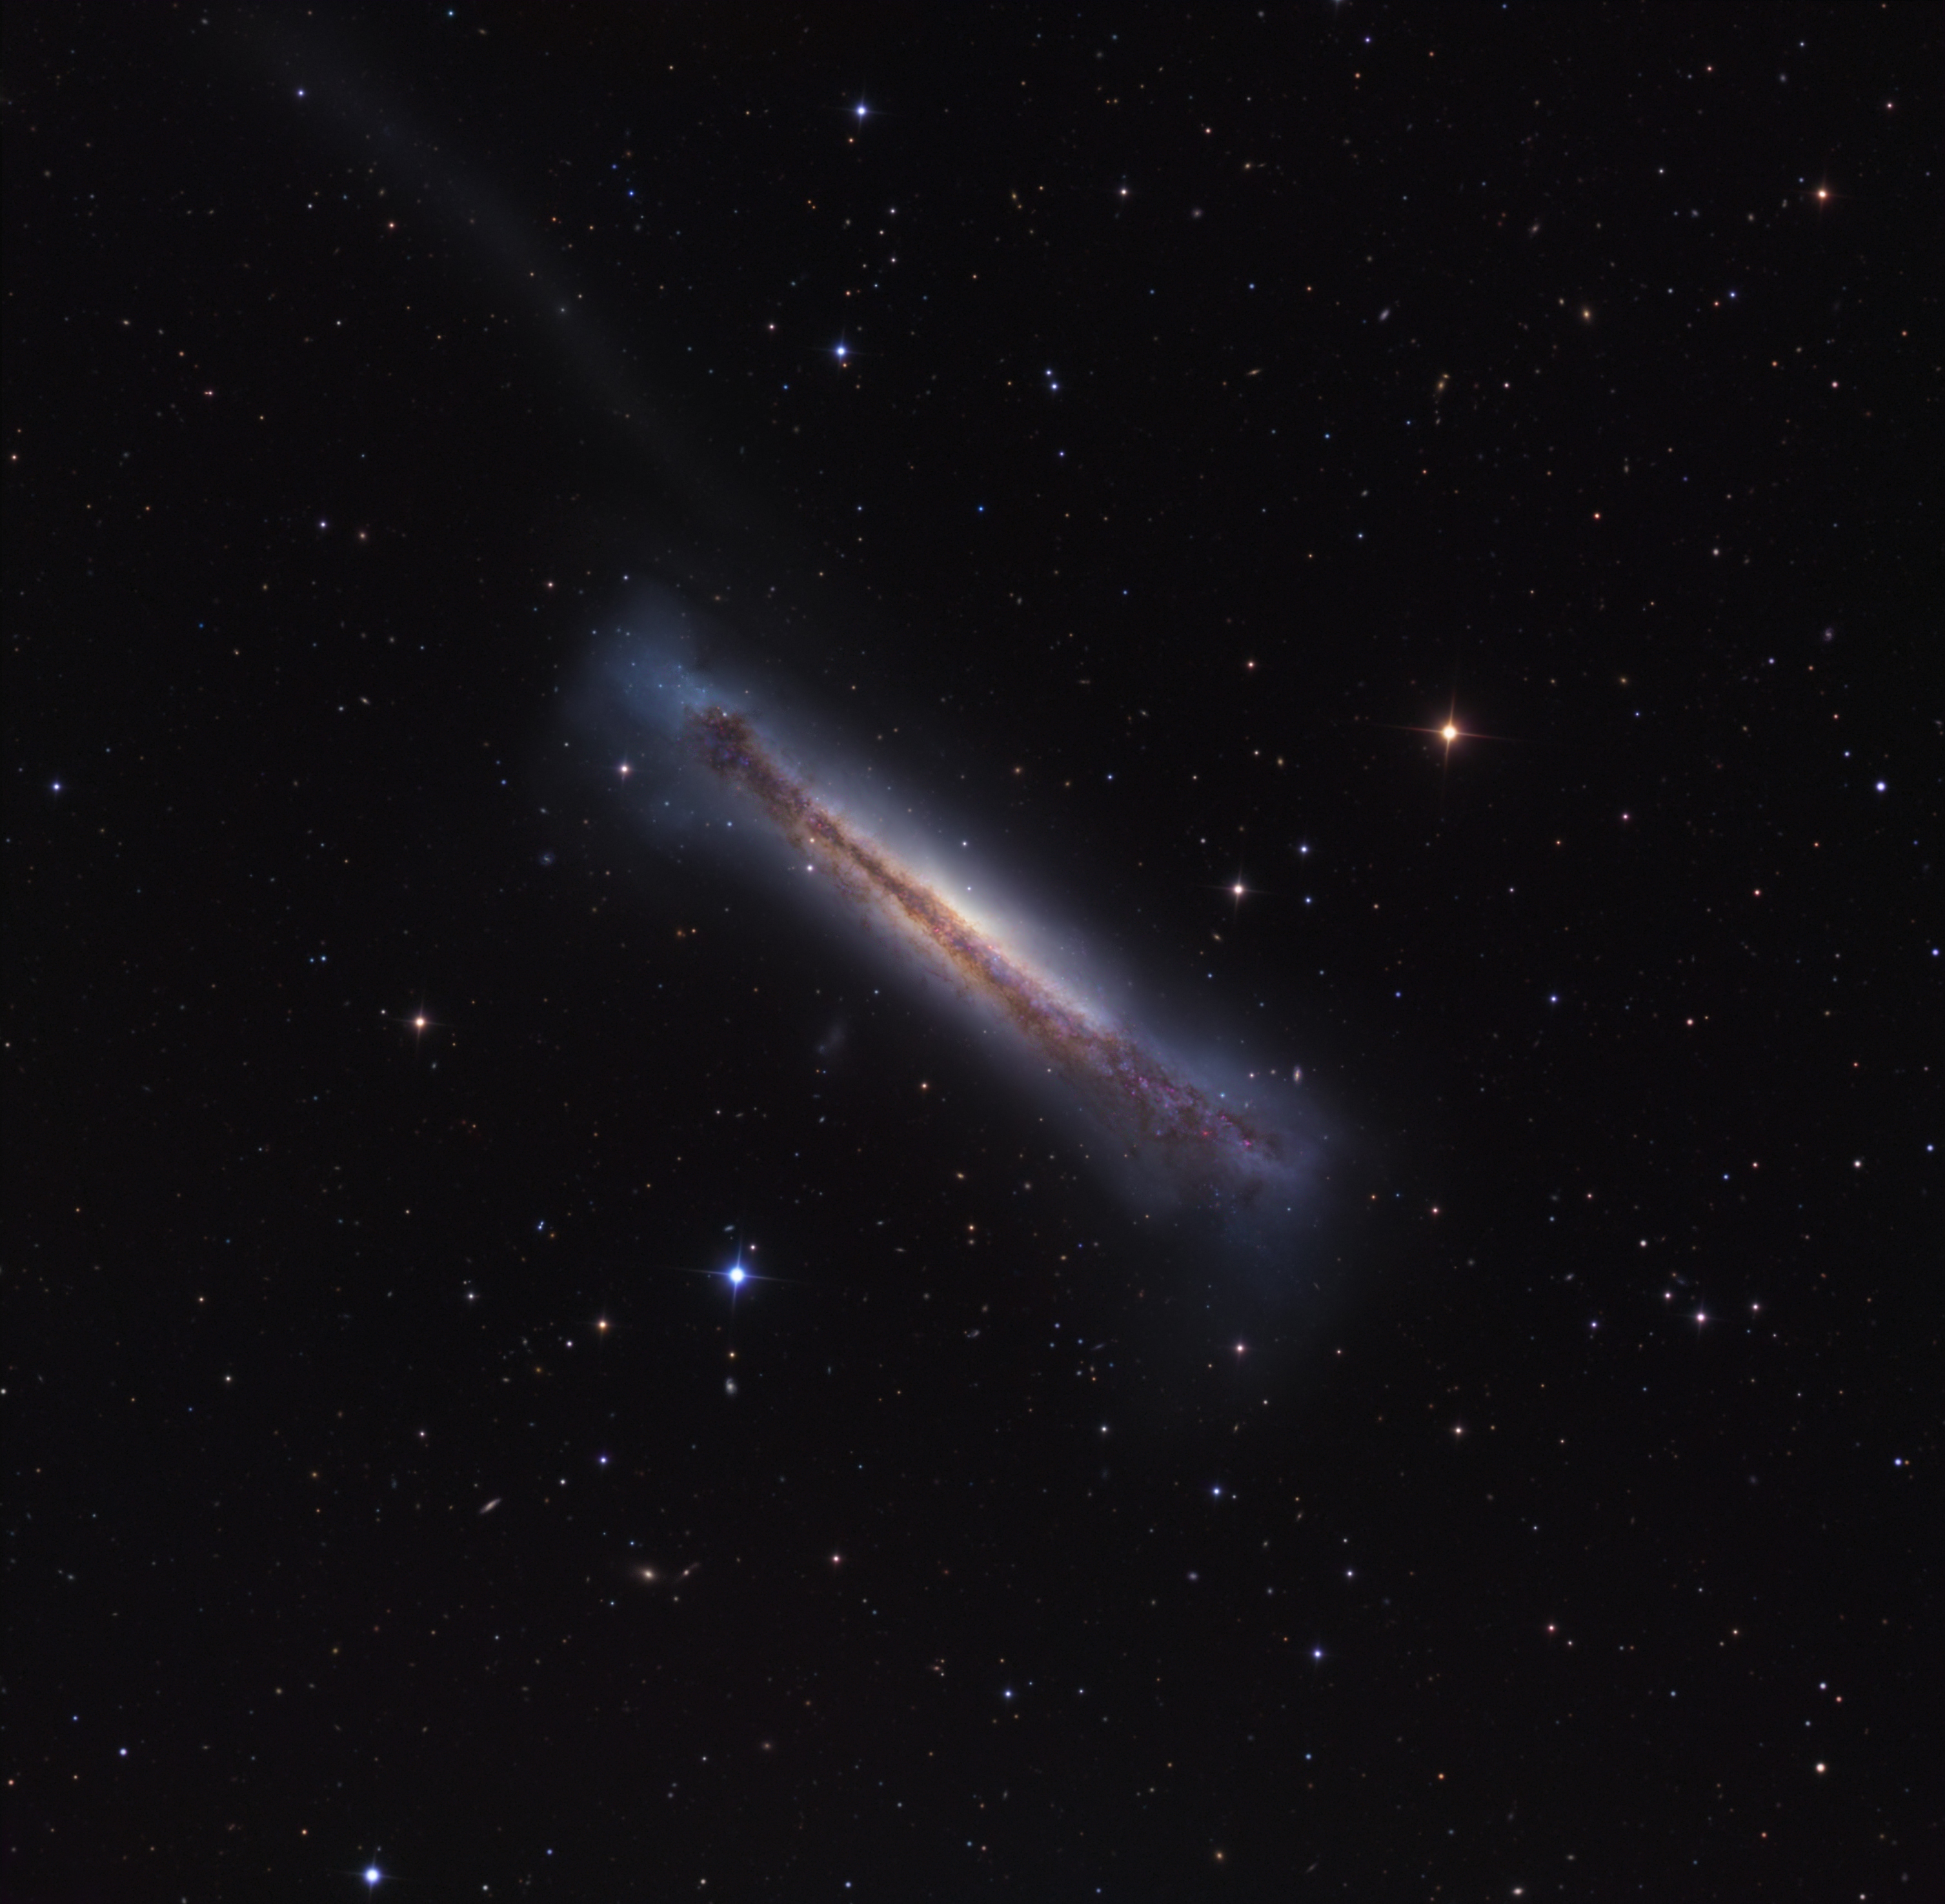 Sideways Galaxy NGC 3628